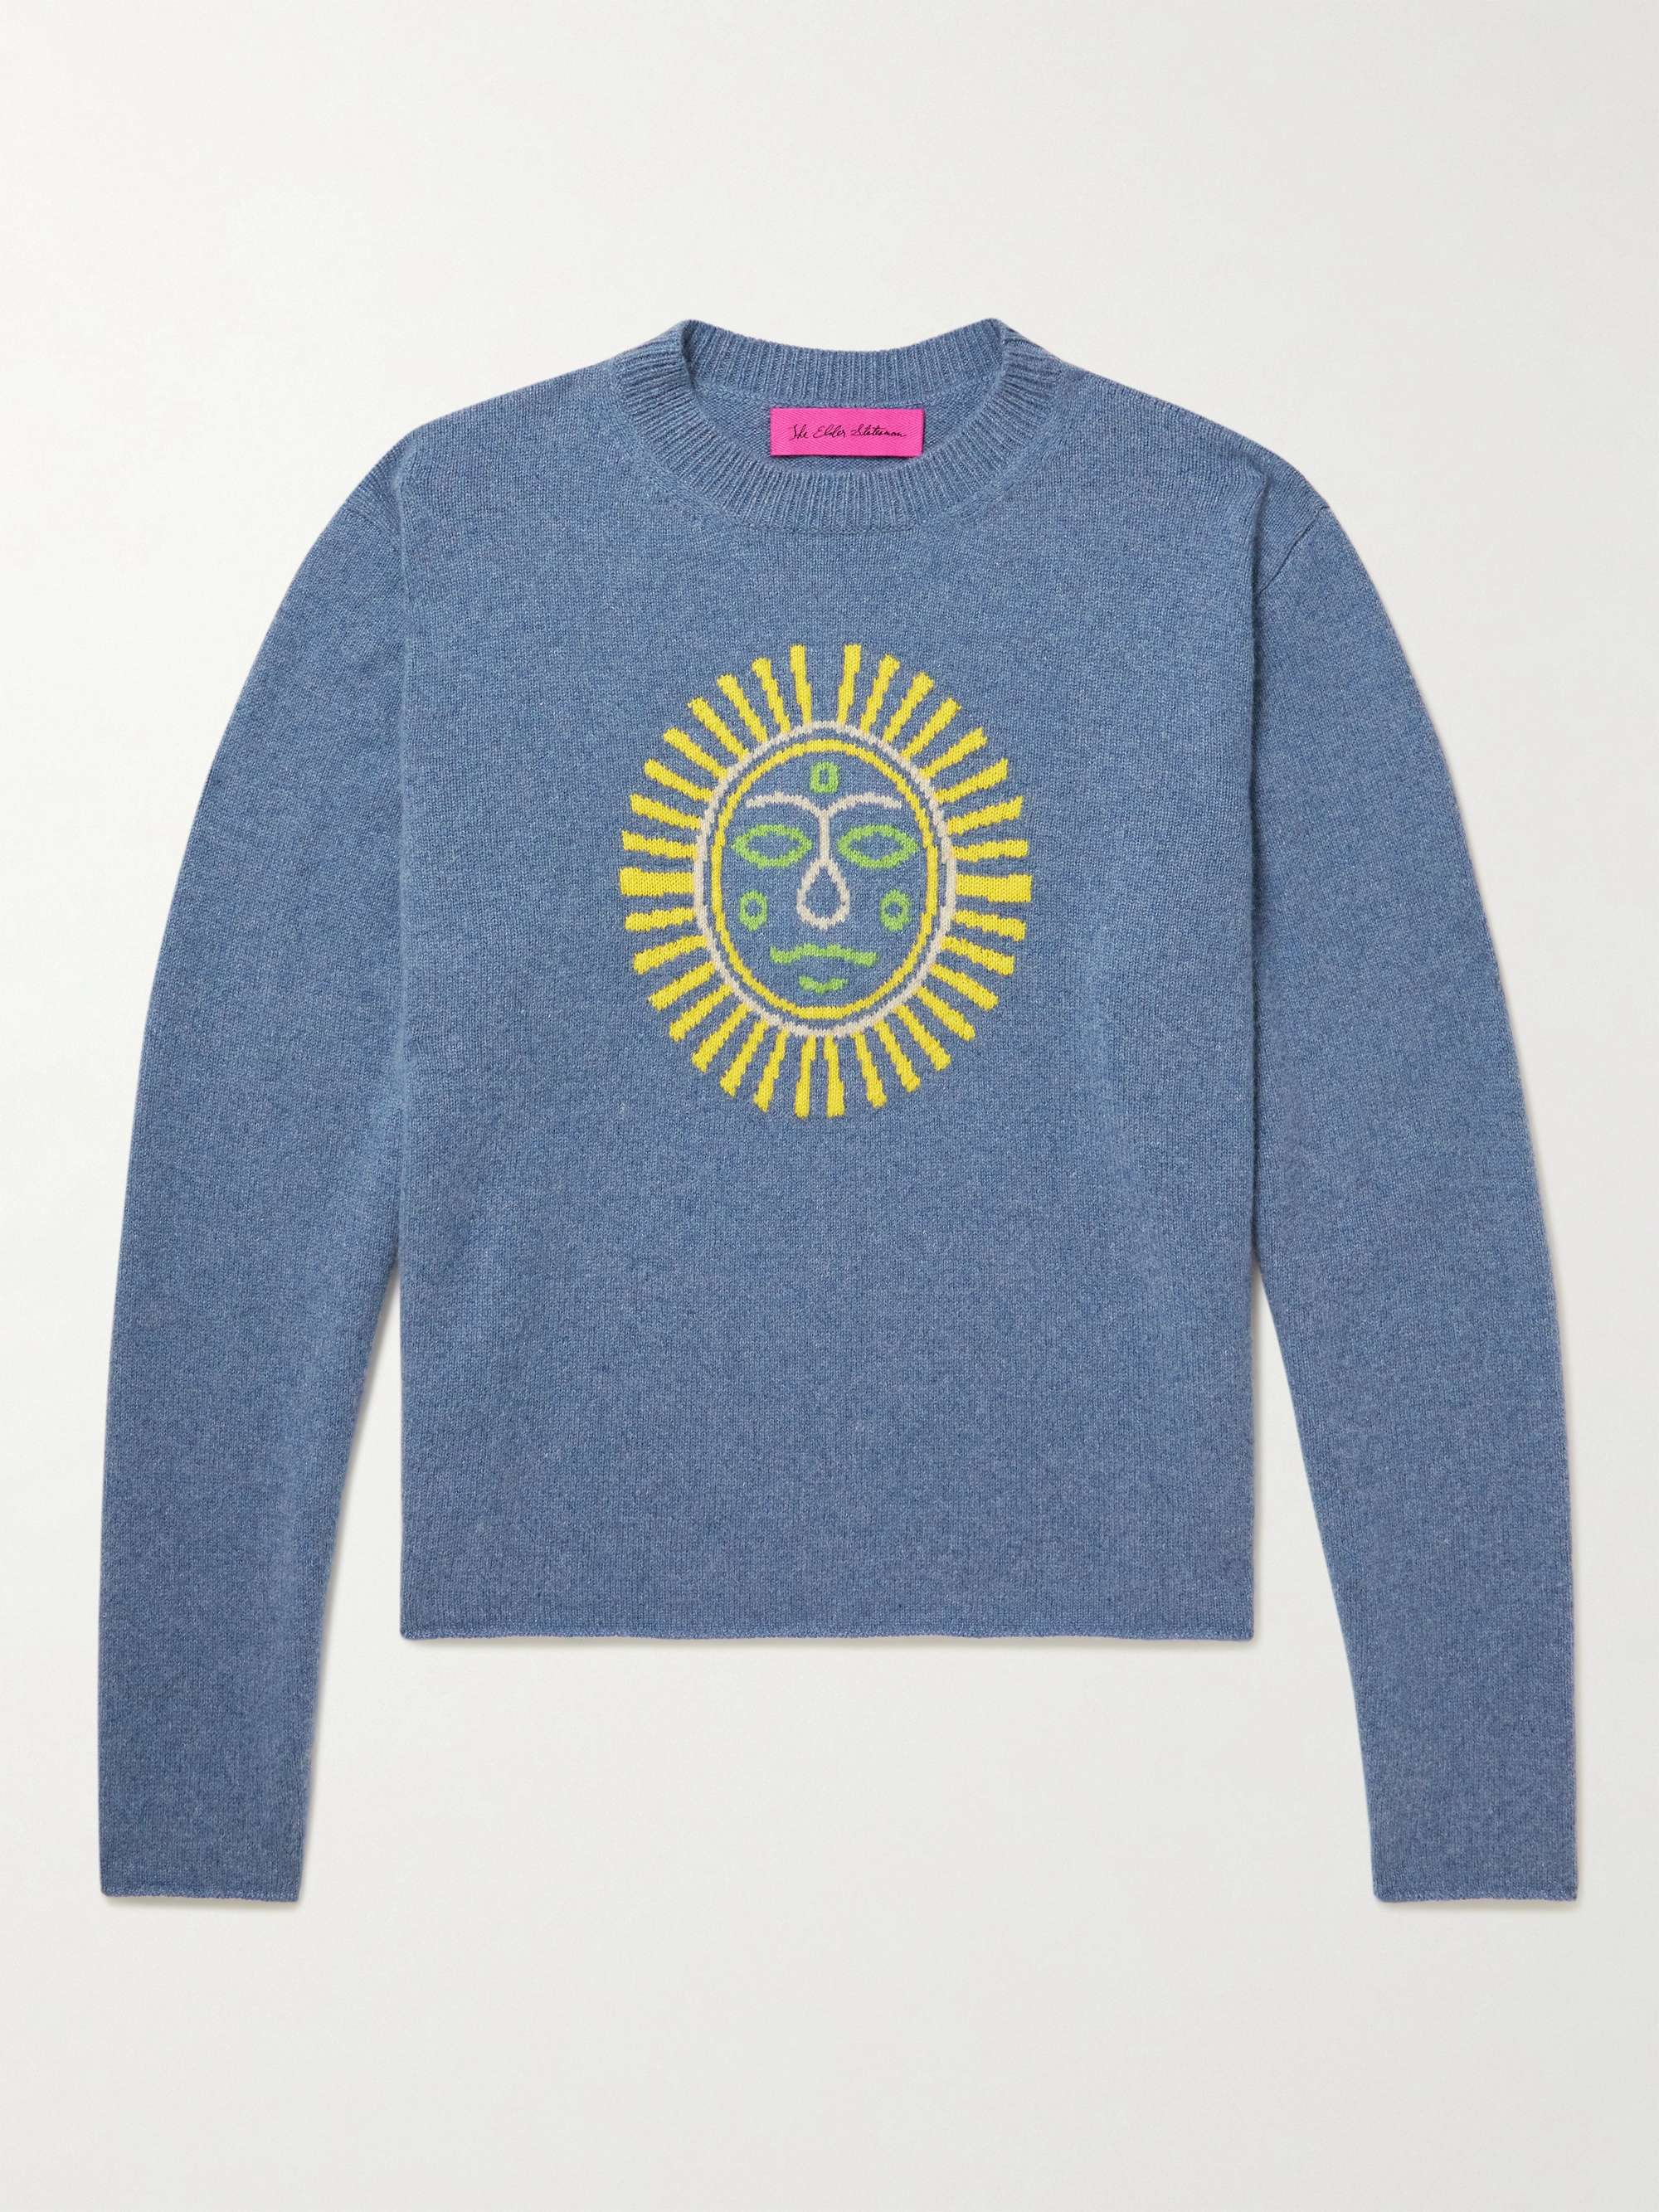 THE ELDER STATESMAN Technicolor Sunshine Embroidered Cashmere Sweater